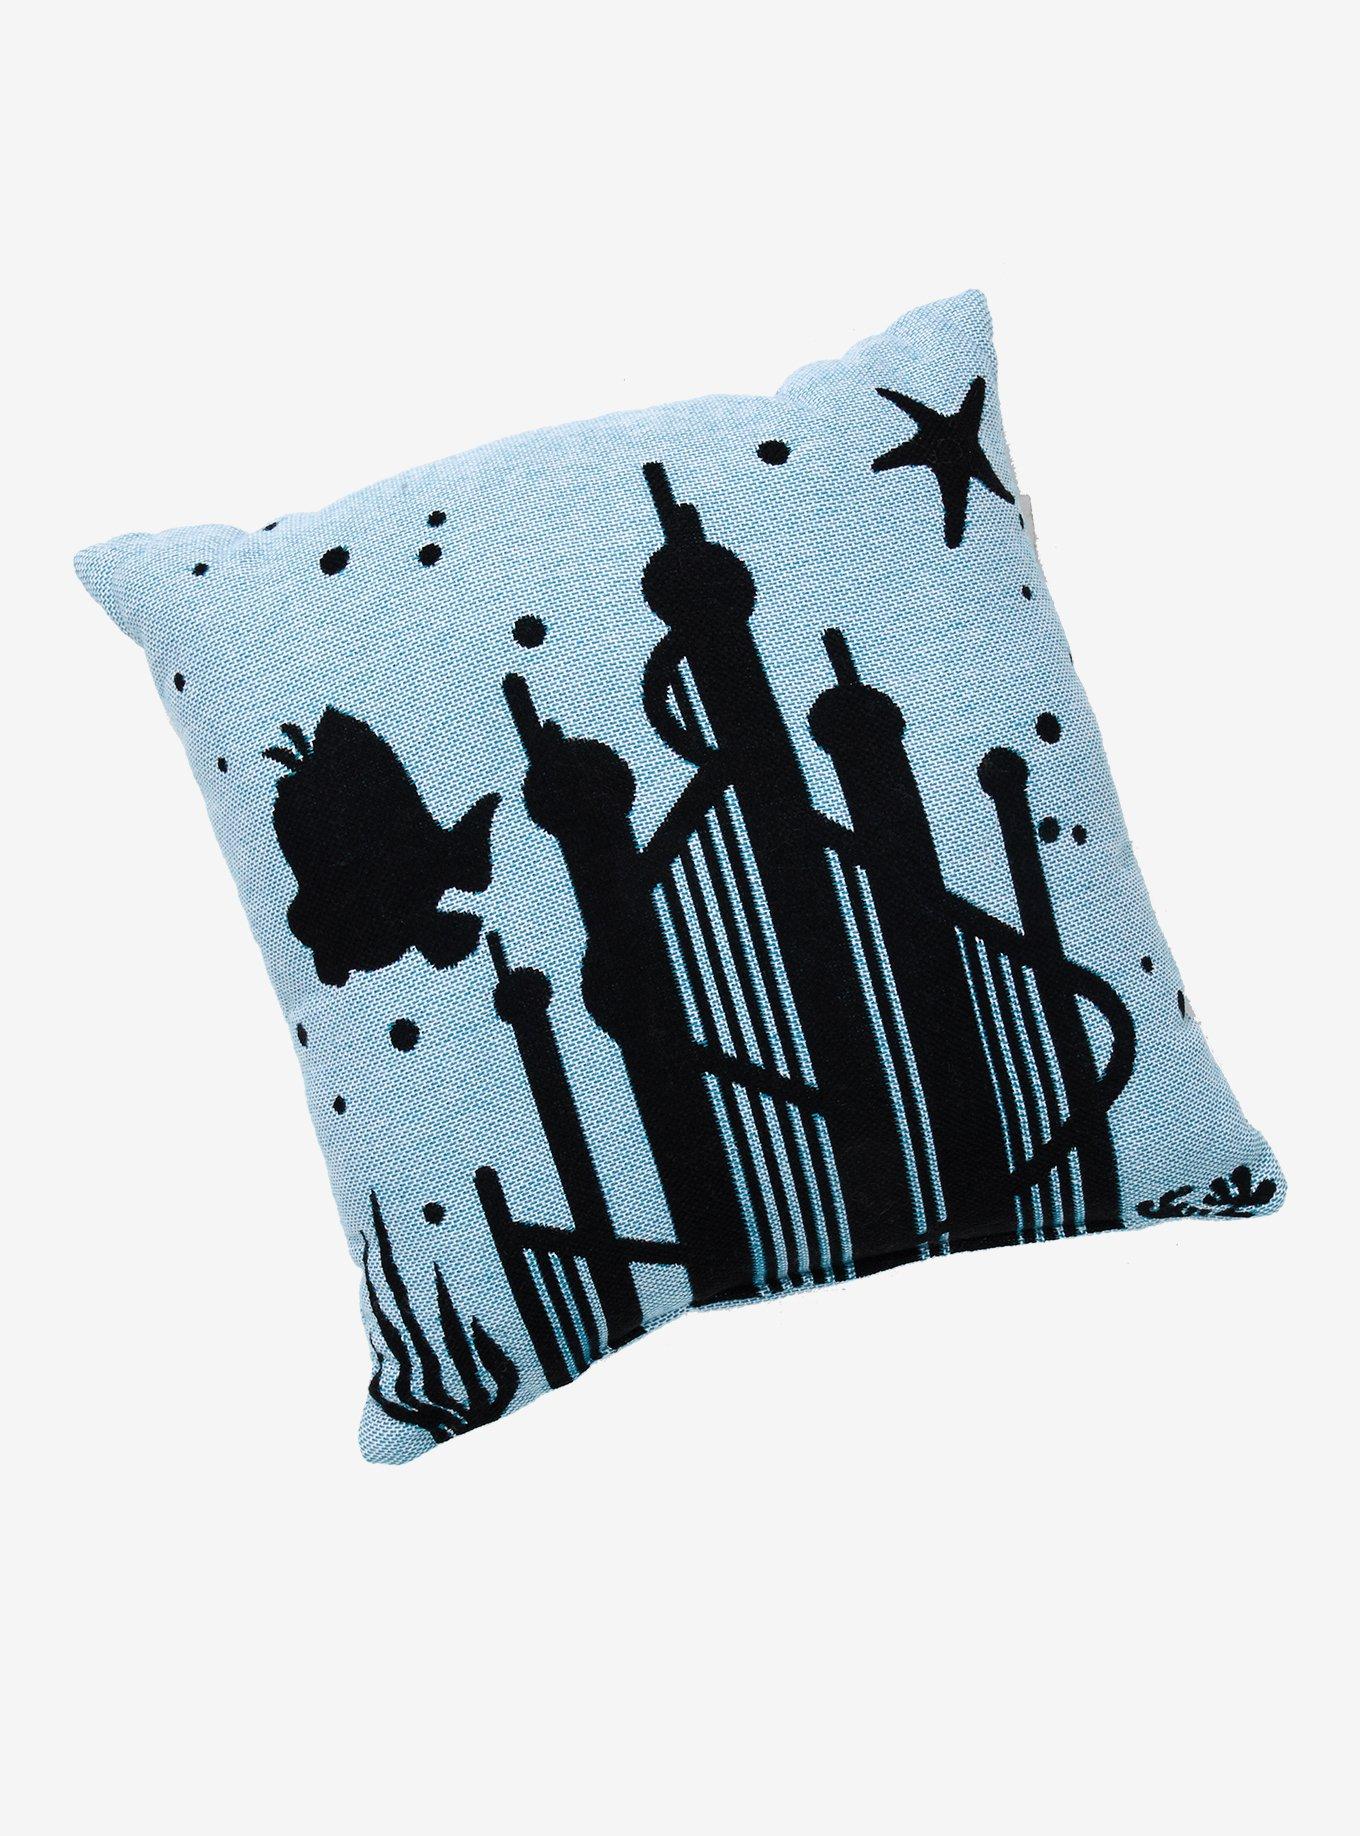 Disney The Little Mermaid Silhouette Tapestry Pillow, , alternate